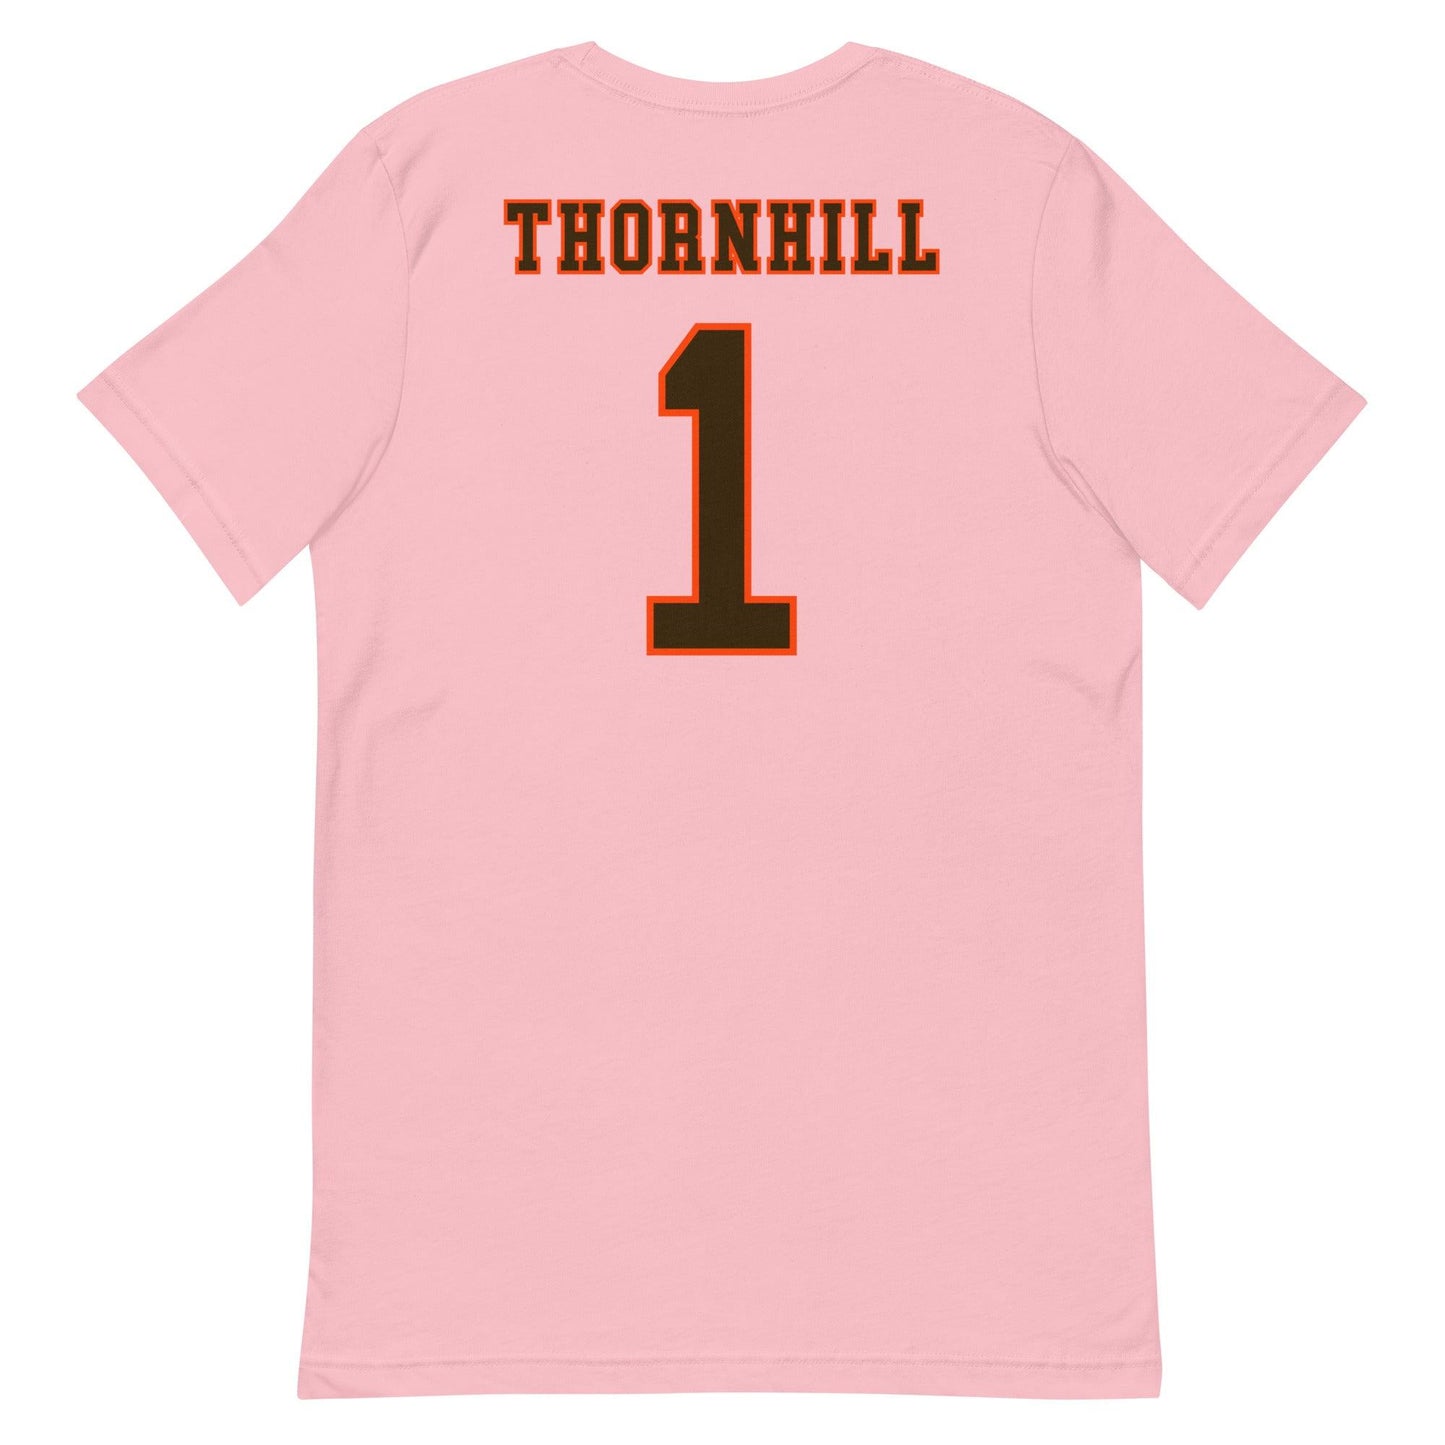 Juan Thornhill "Jersey" t-shirt - Fan Arch